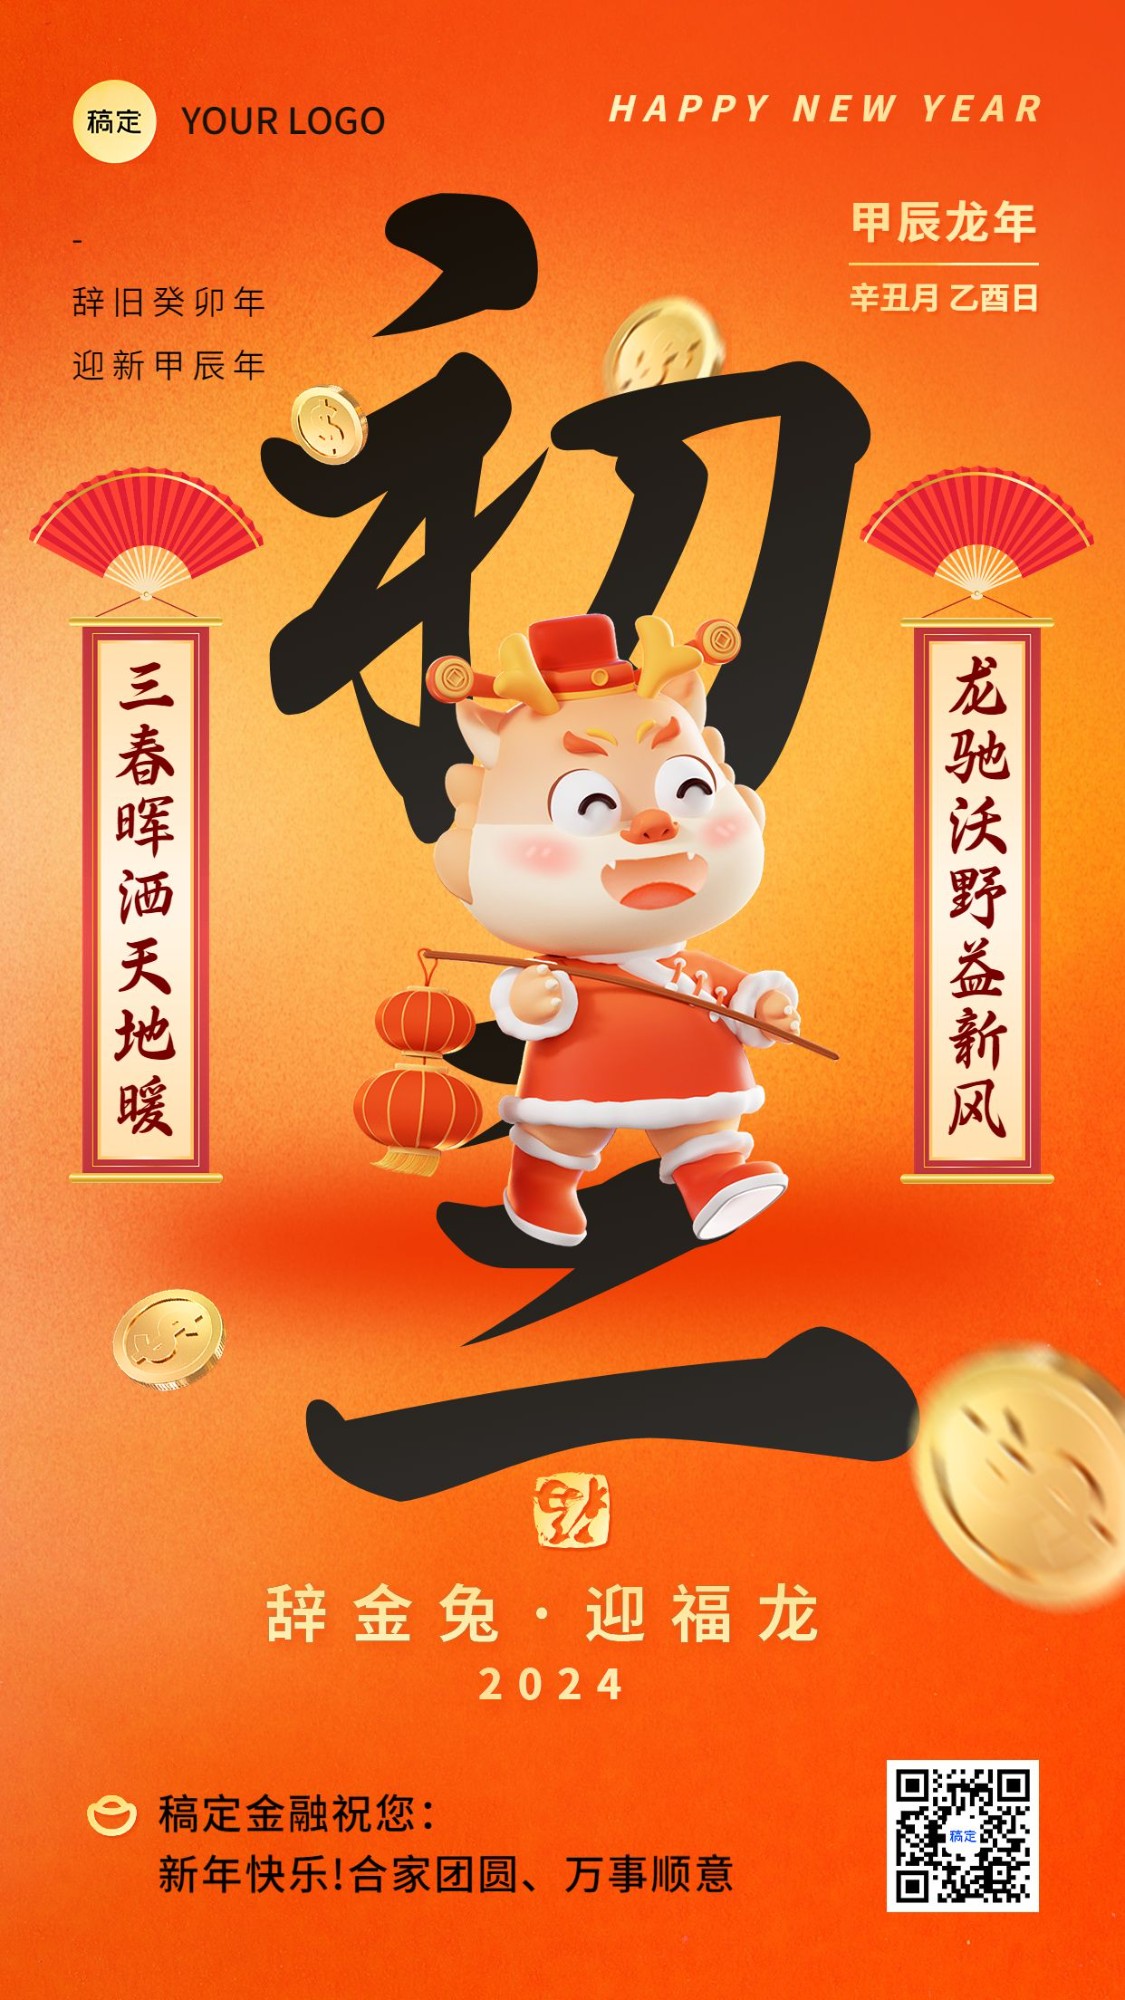 金融春节新年祝福正月初三手机海报